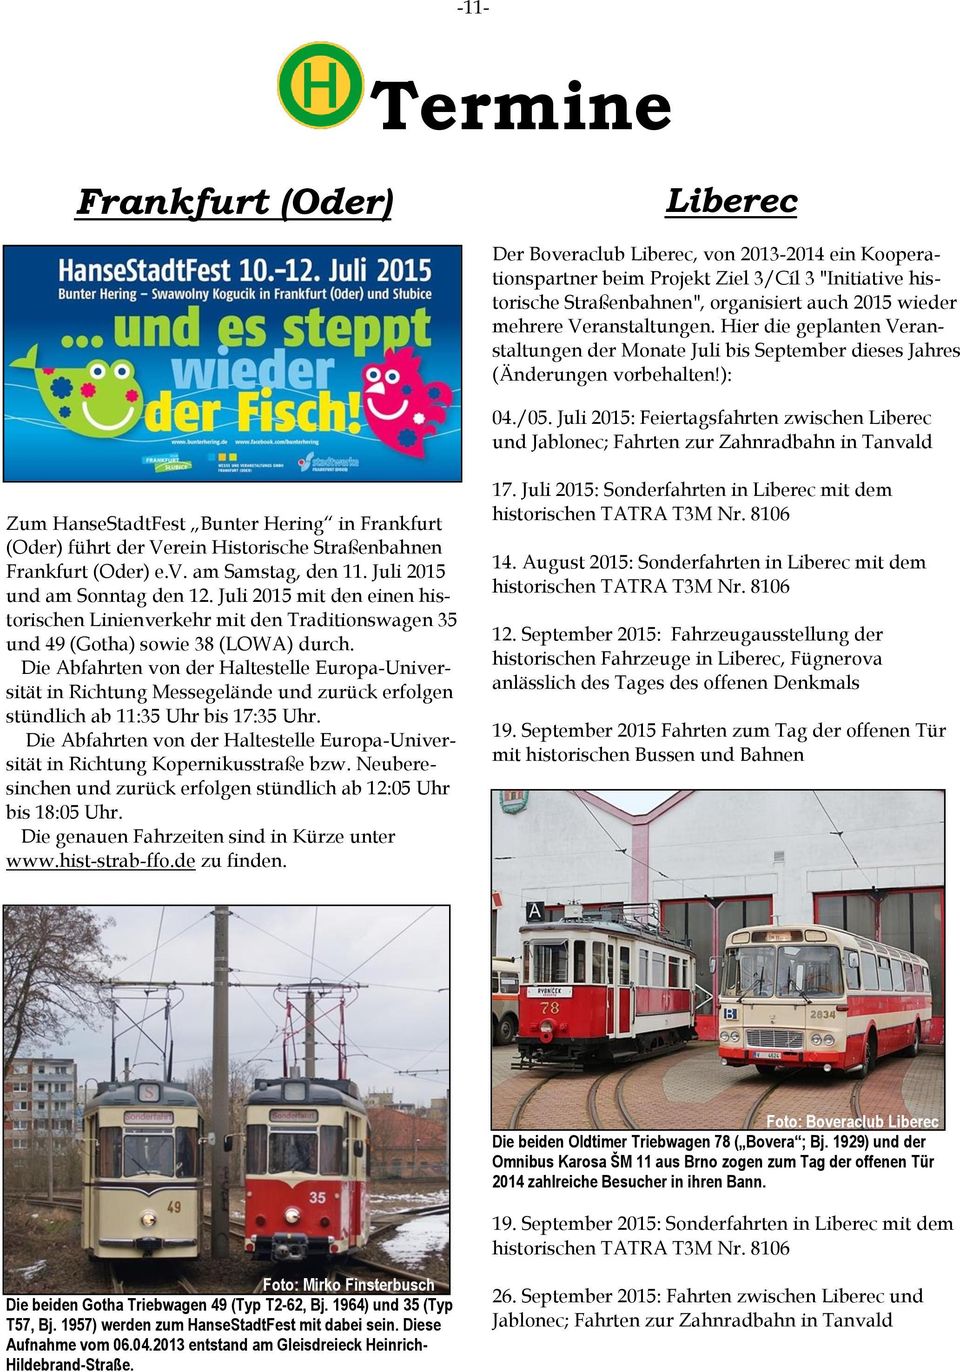 Juli 2015: Feiertagsfahrten zwischen Liberec und Jablonec; Fahrten zur Zahnradbahn in Tanvald Zum HanseStadtFest Bunter Hering in Frankfurt (Oder) führt der Verein Historische Straßenbahnen Frankfurt